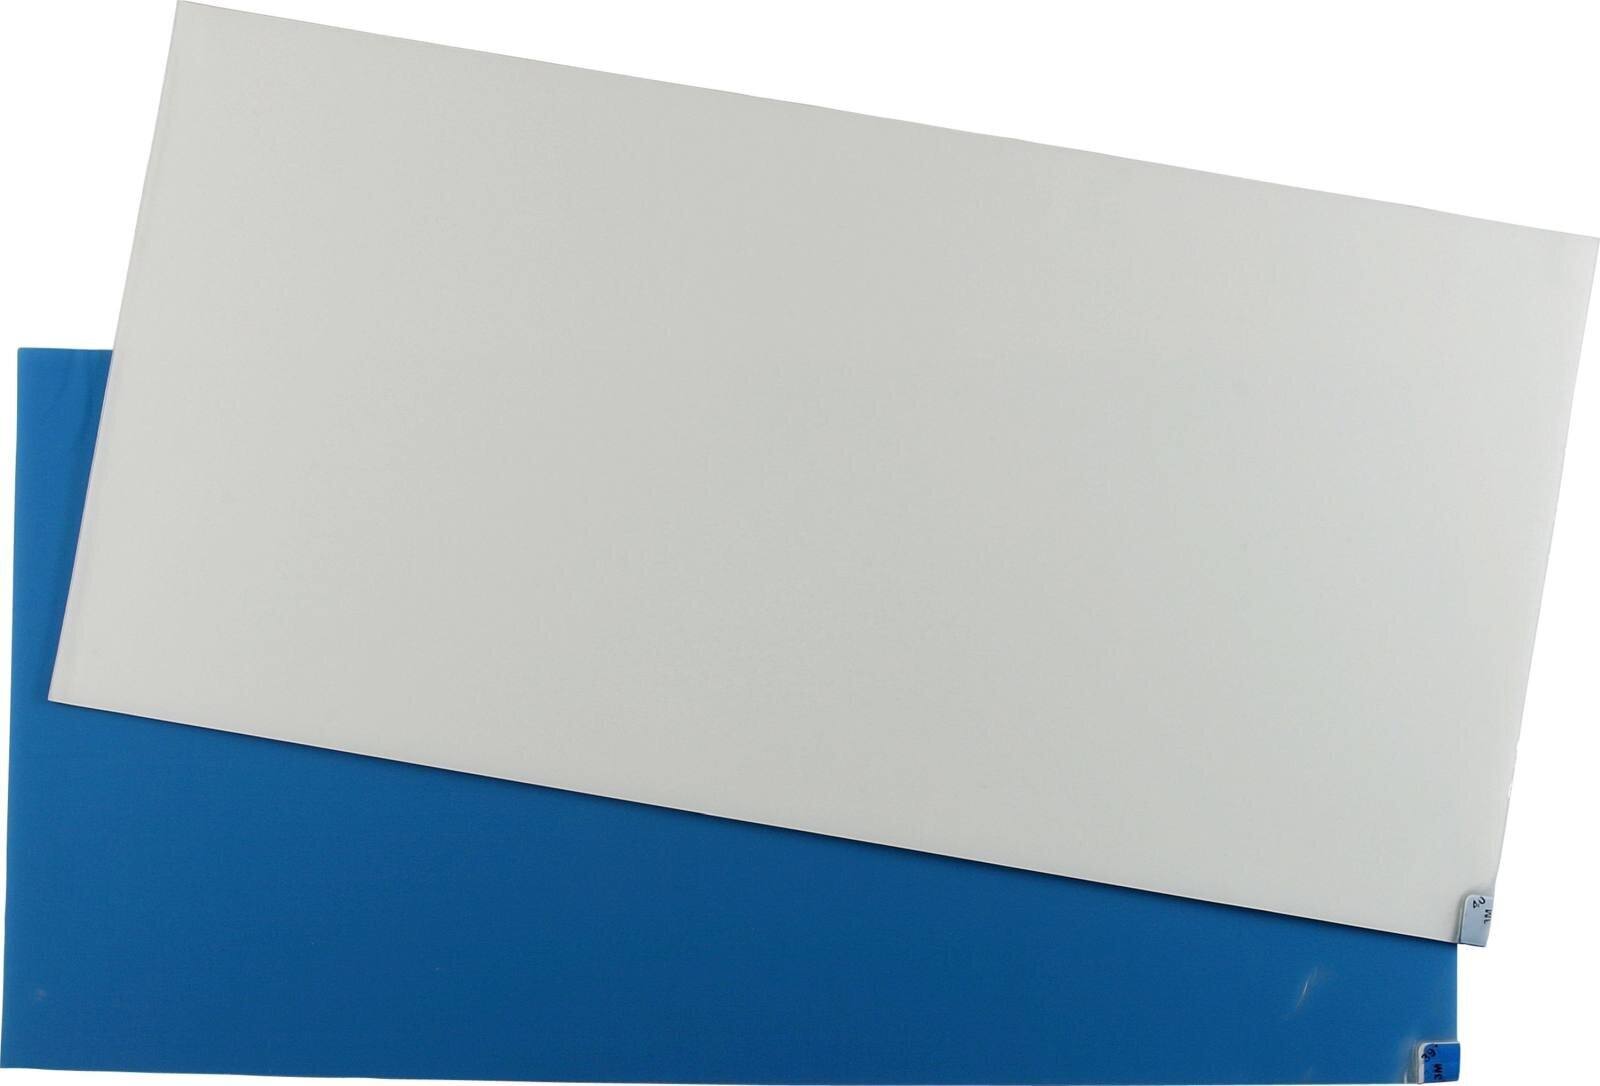 3M 4300 Nomad Fine Dust -liimamatto, valkoinen, 1,15 m x 0,6 m, 40 kpl läpinäkyviä polyeteenikerroksia.